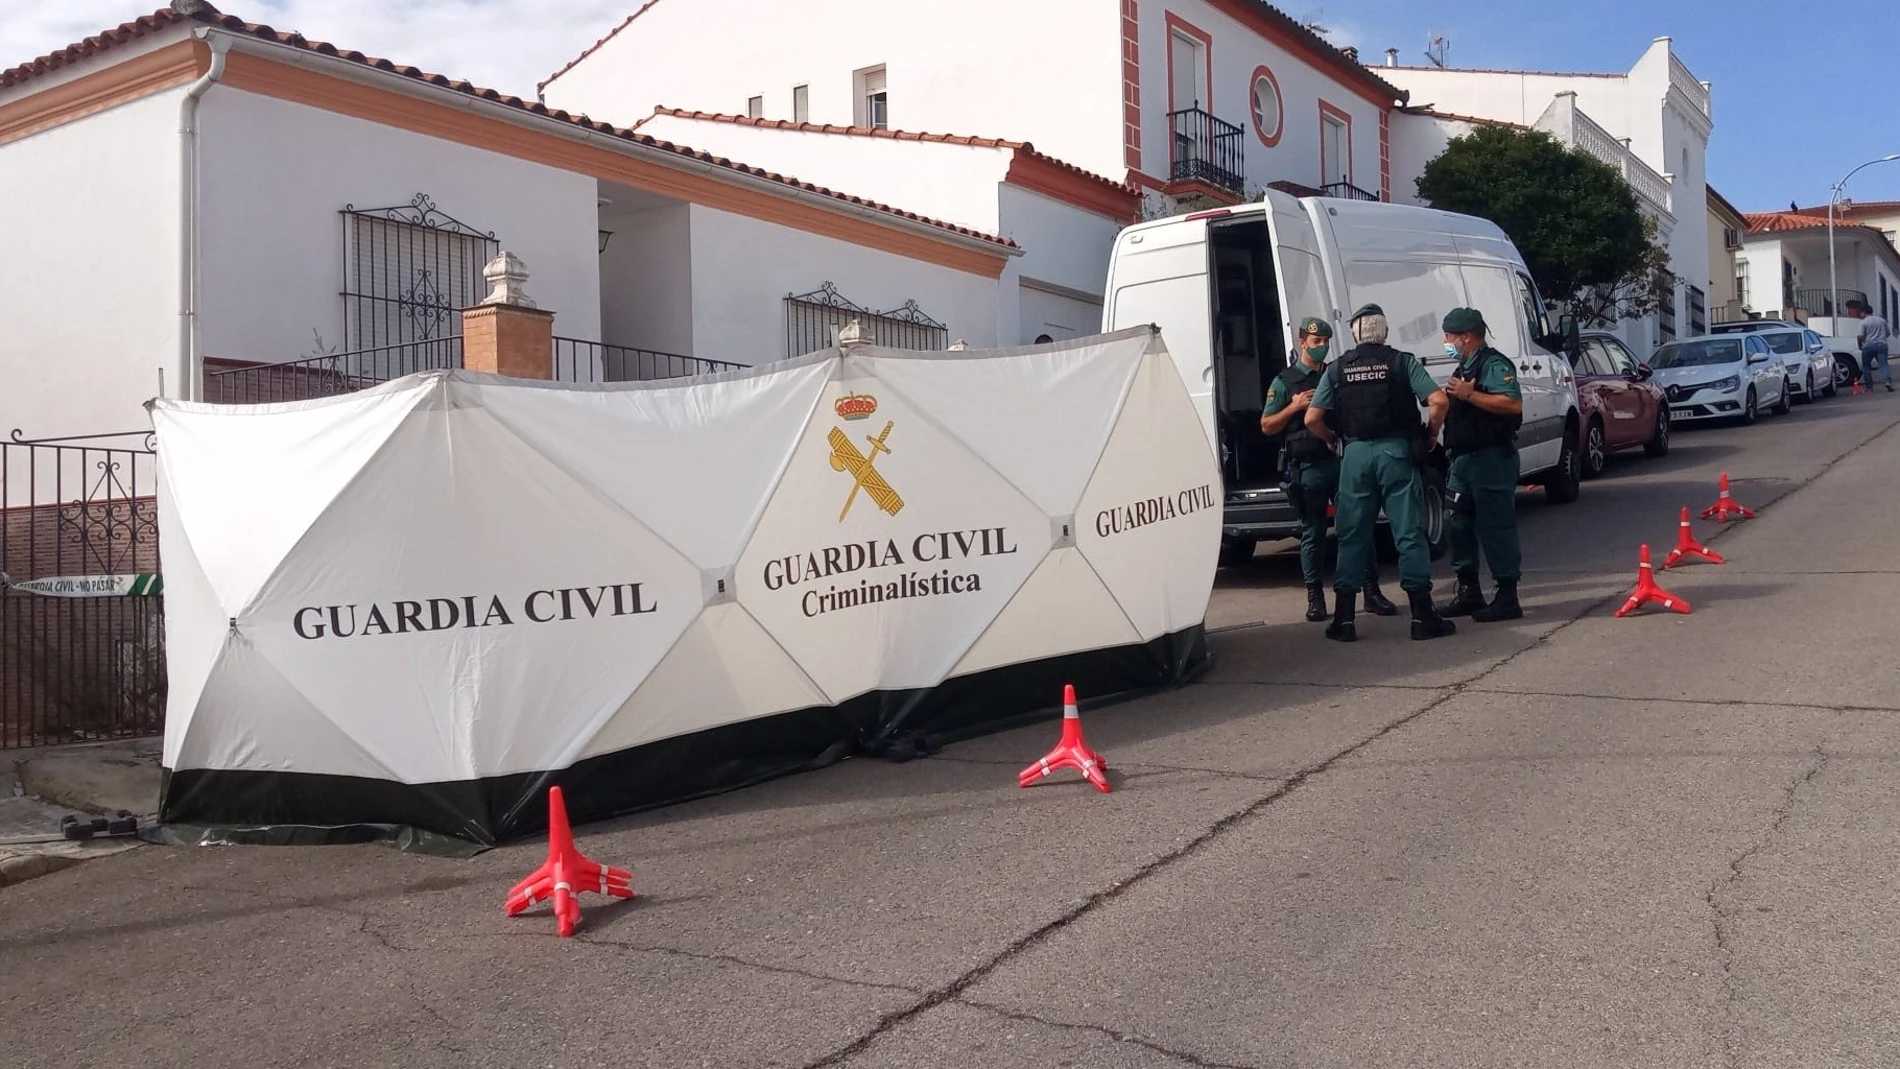 La Guardia Civil en el domicilio del detenido por la muerte de Manuela ChaveroEUROPA PRESS21/09/2020